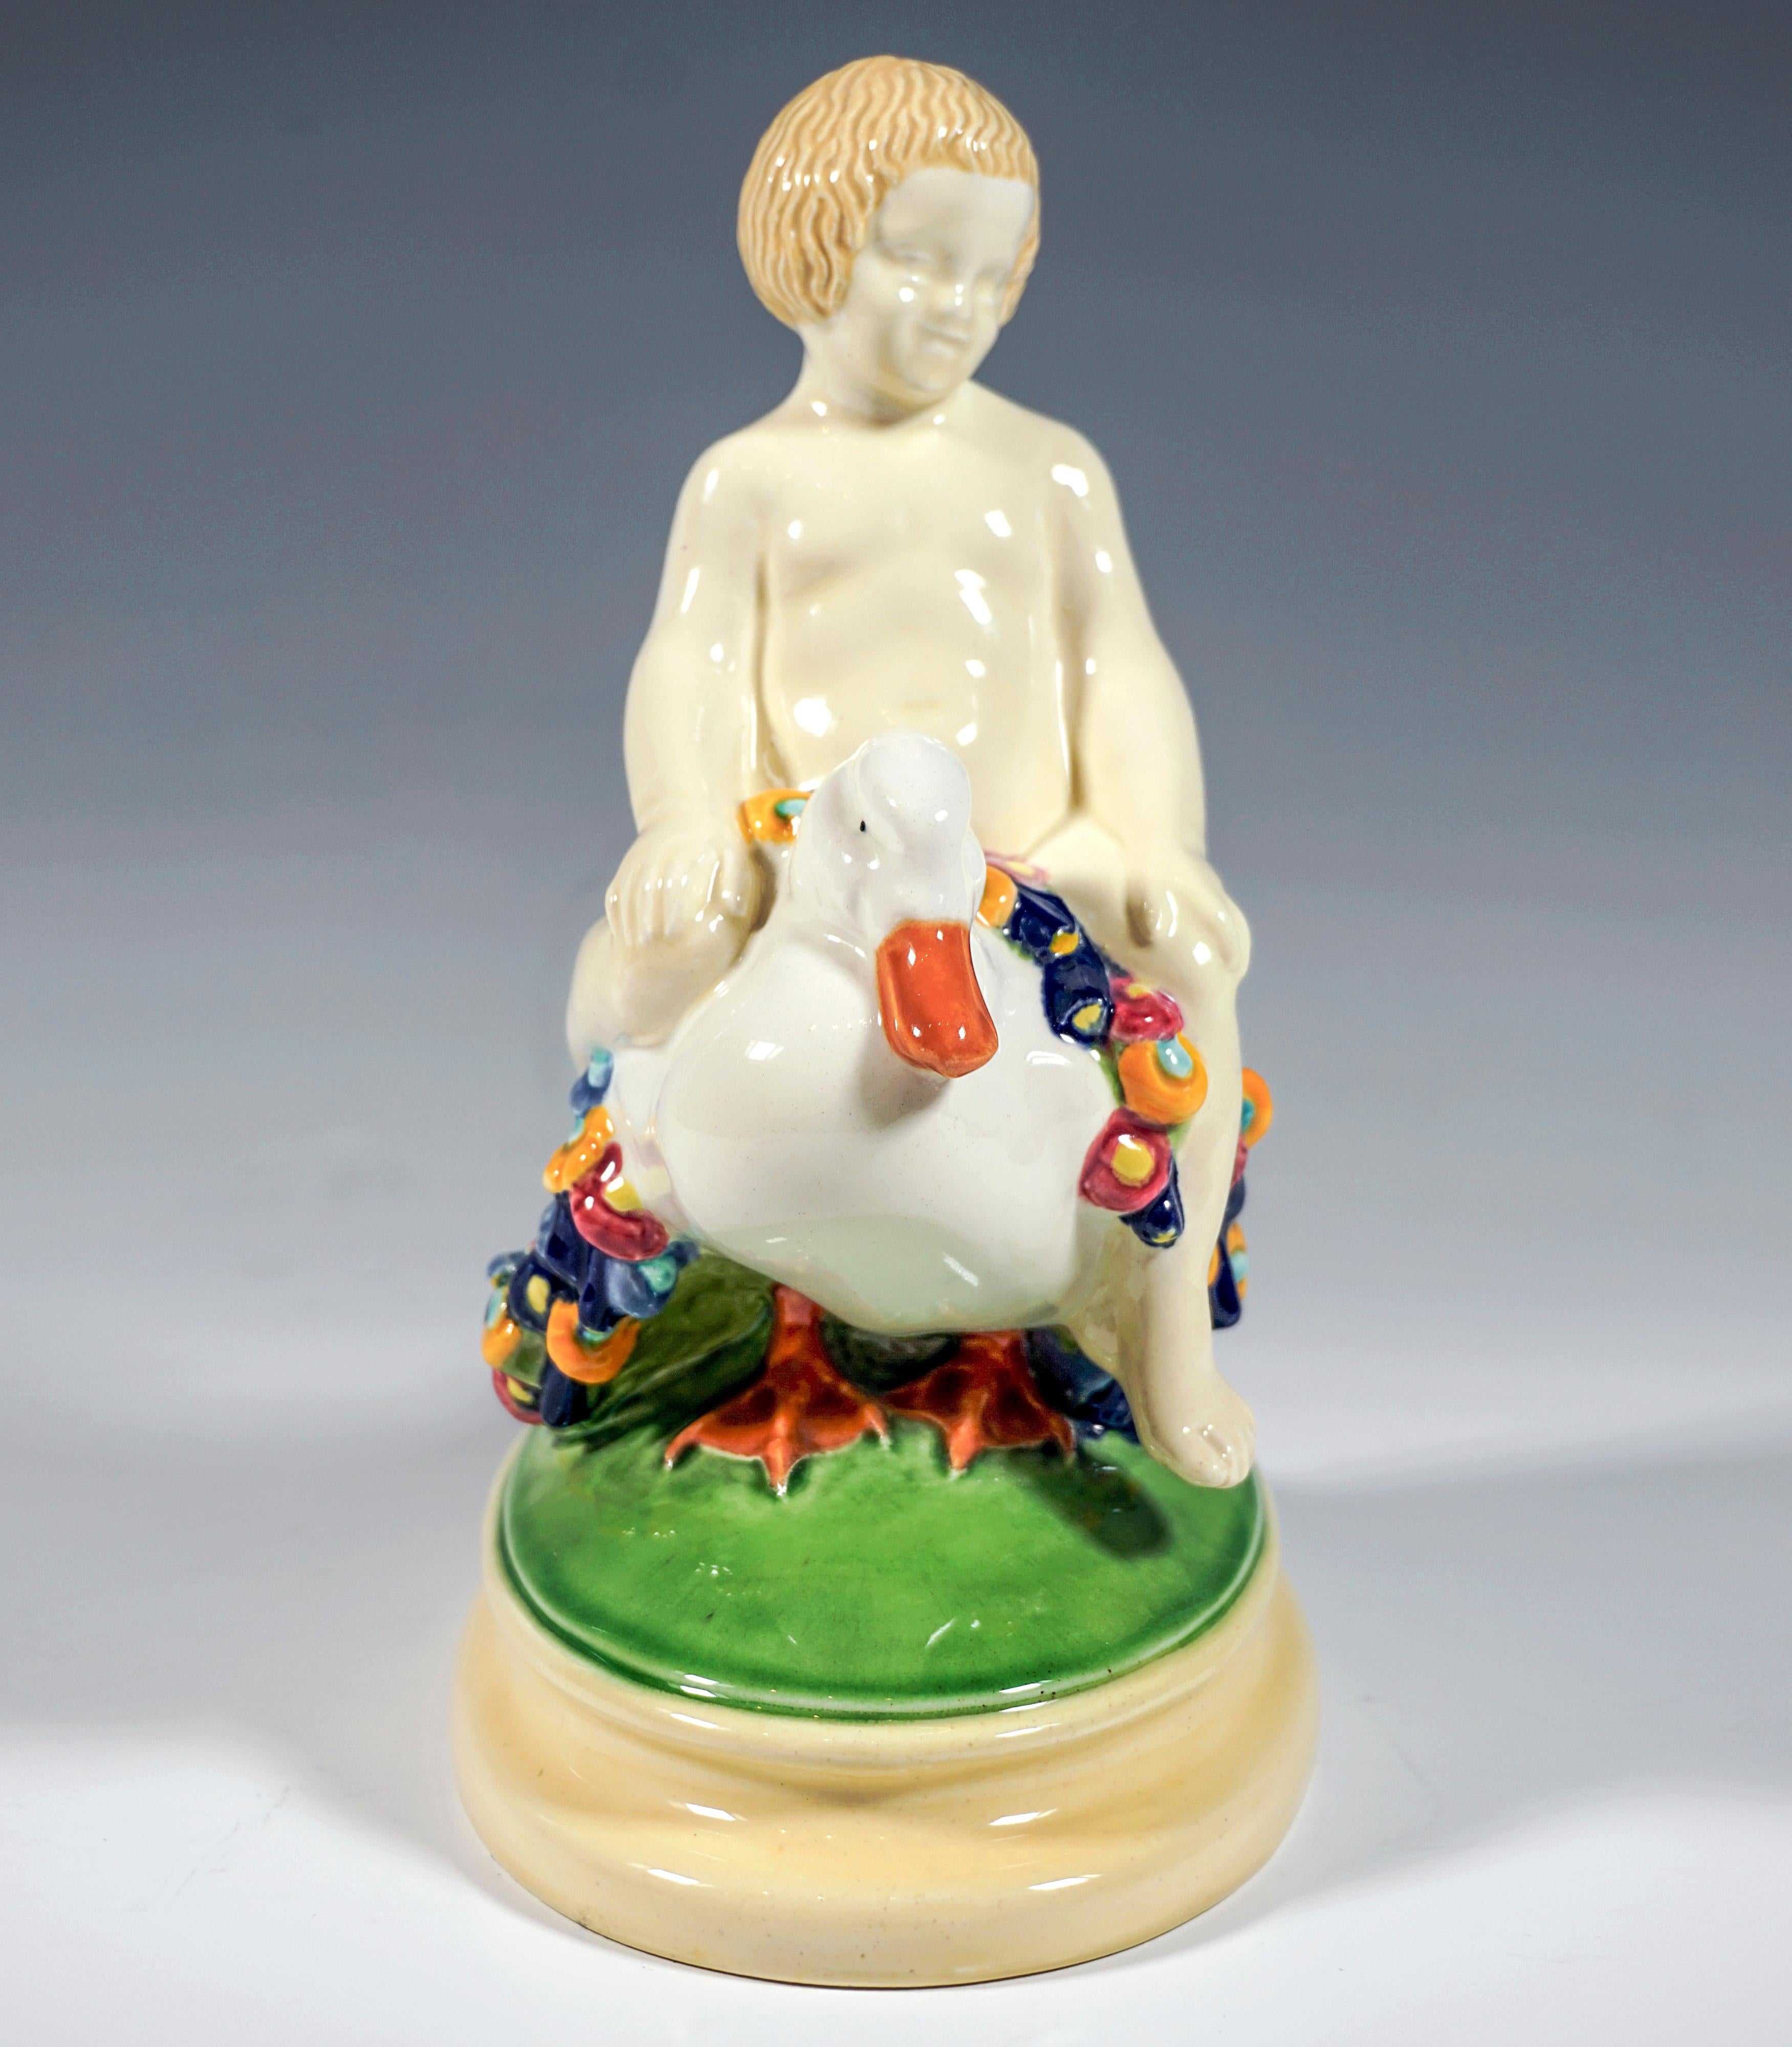 Ausgezeichnetes Wiener Jugendstil-Keramikstück:
Ein blonder Junge sitzt rittlings auf einer mit bunten Blumengirlanden geschmückten Ente und stützt seine Hände auf die Knie.
Die Gruppe steht auf einem ovalen, grün und cremefarben bemalten,